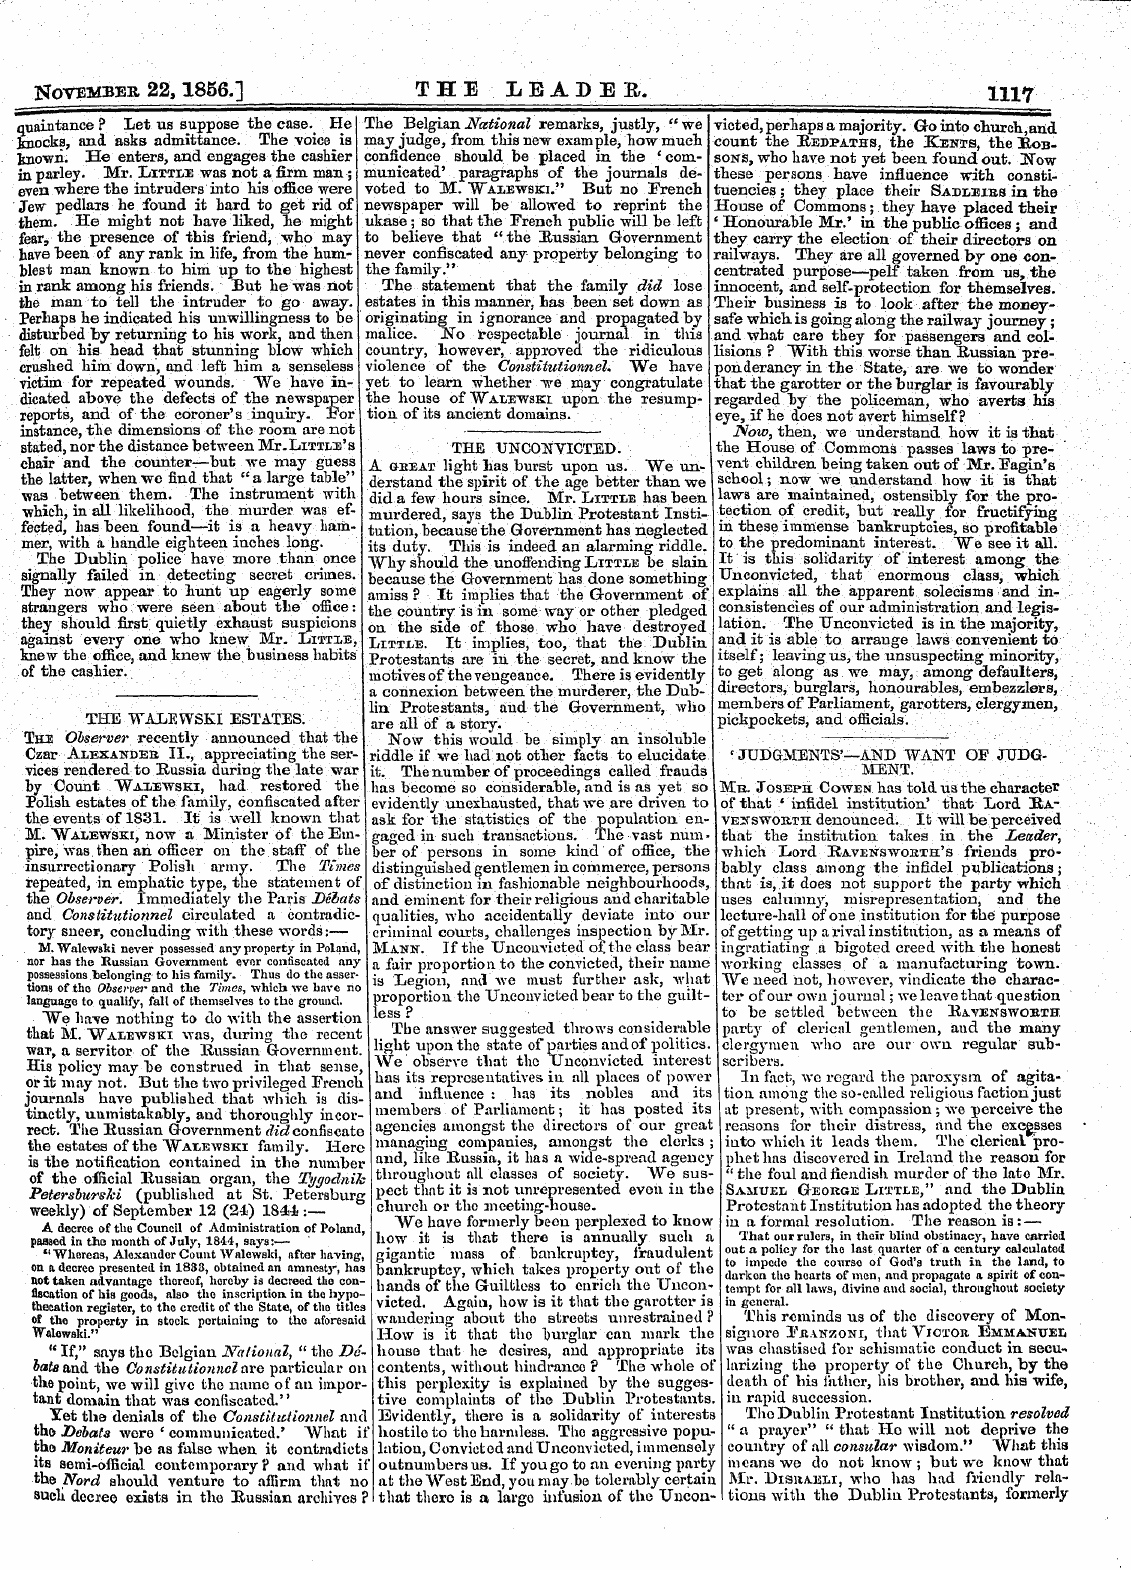 Leader (1850-1860): jS F Y, 2nd edition - November 22,1856.] The Leader. 1117